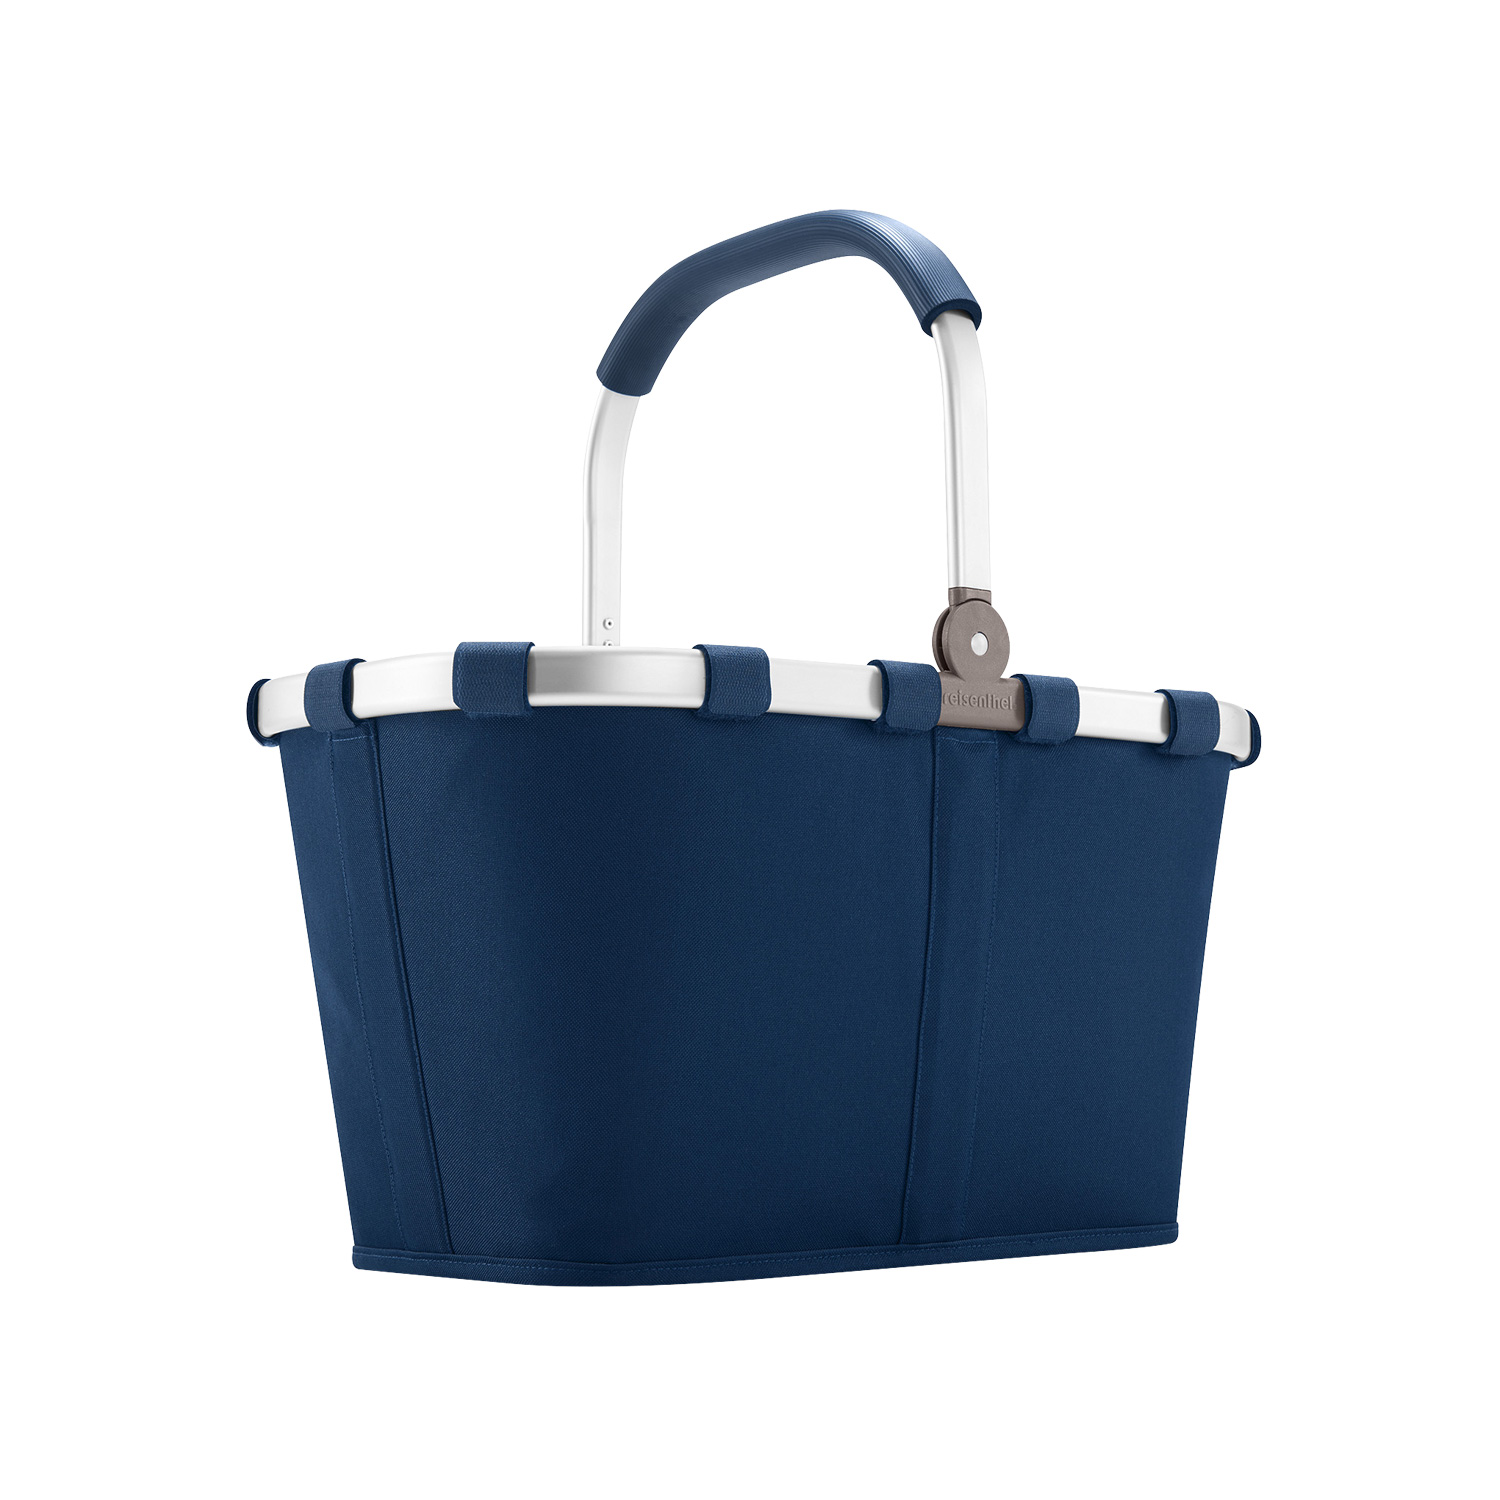 dark blue – Einkaufskorb carrybag dark blue 22 Liter reisenthel